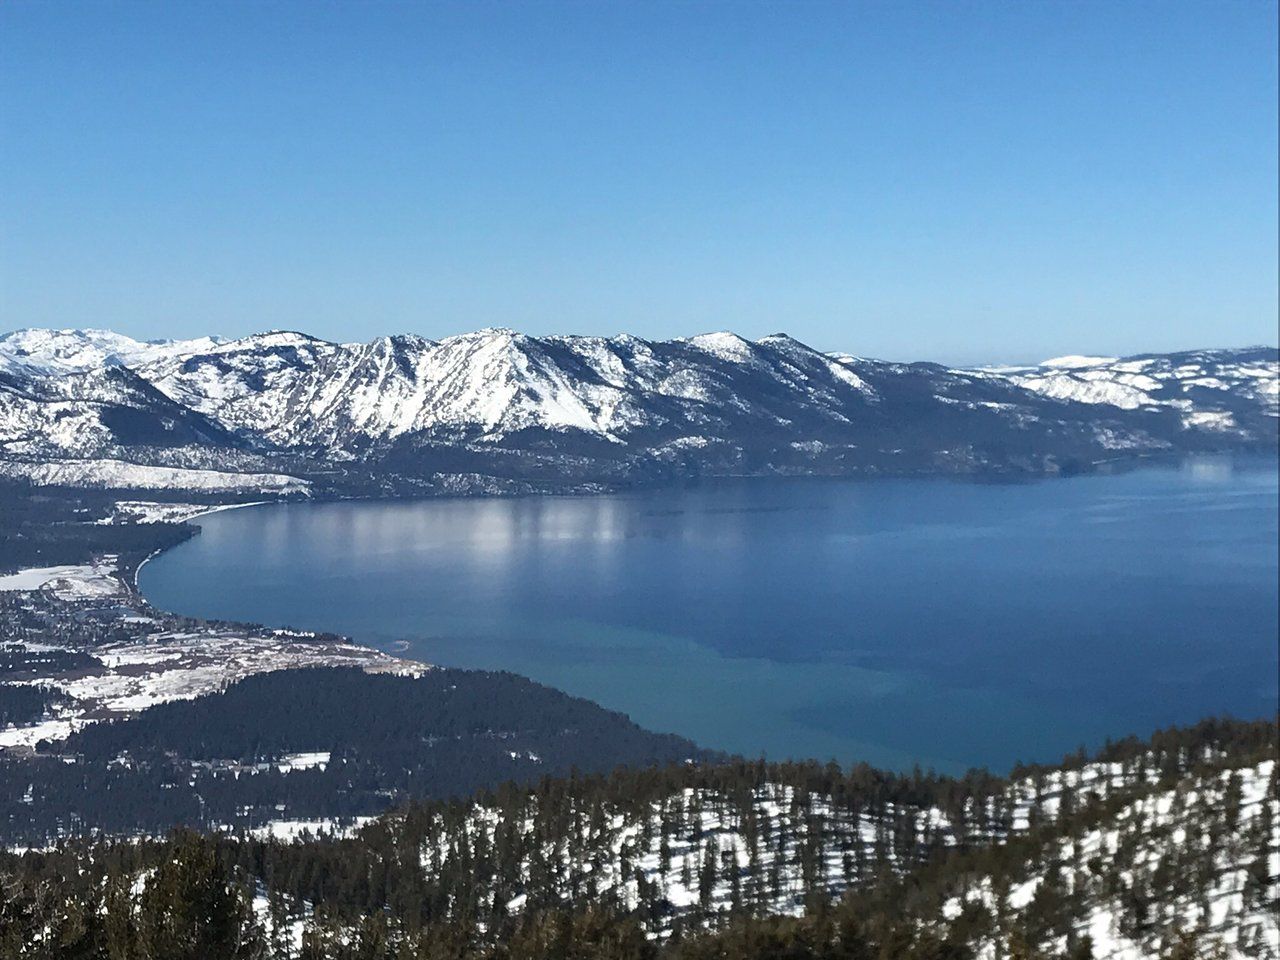 Vivez lextase sur les pistes: Heavenly Mountain Resort, lac Tahoe.